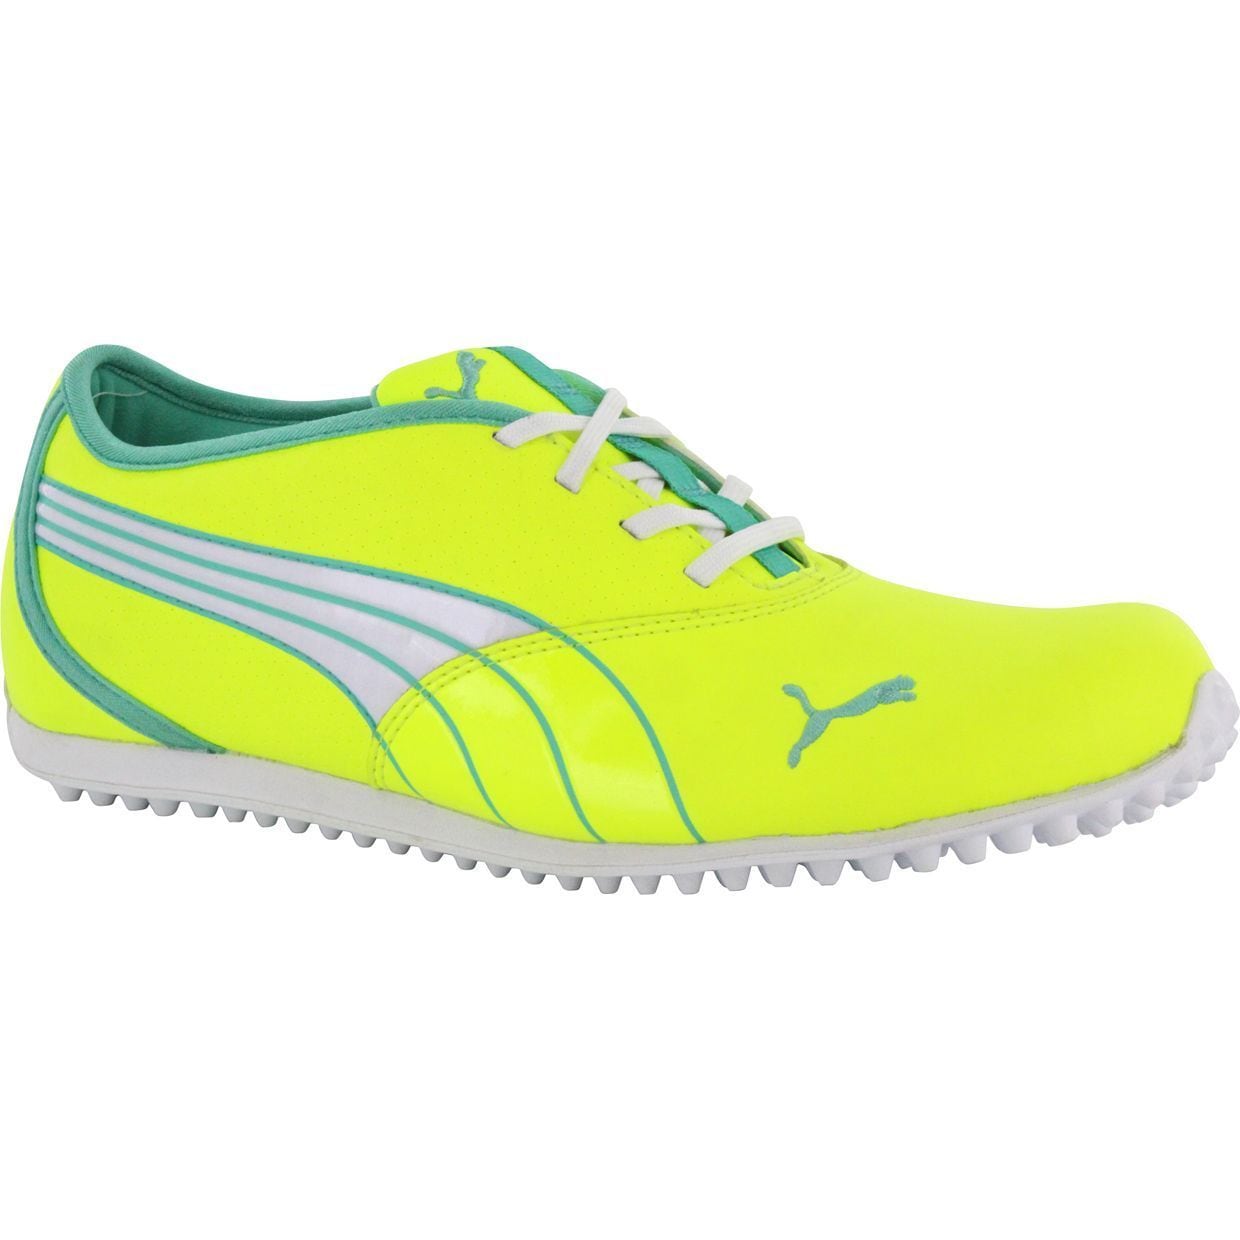 Puma Womens Monolite Spikeless Fluorescent Yellow/ Electric Green Golf Shoes